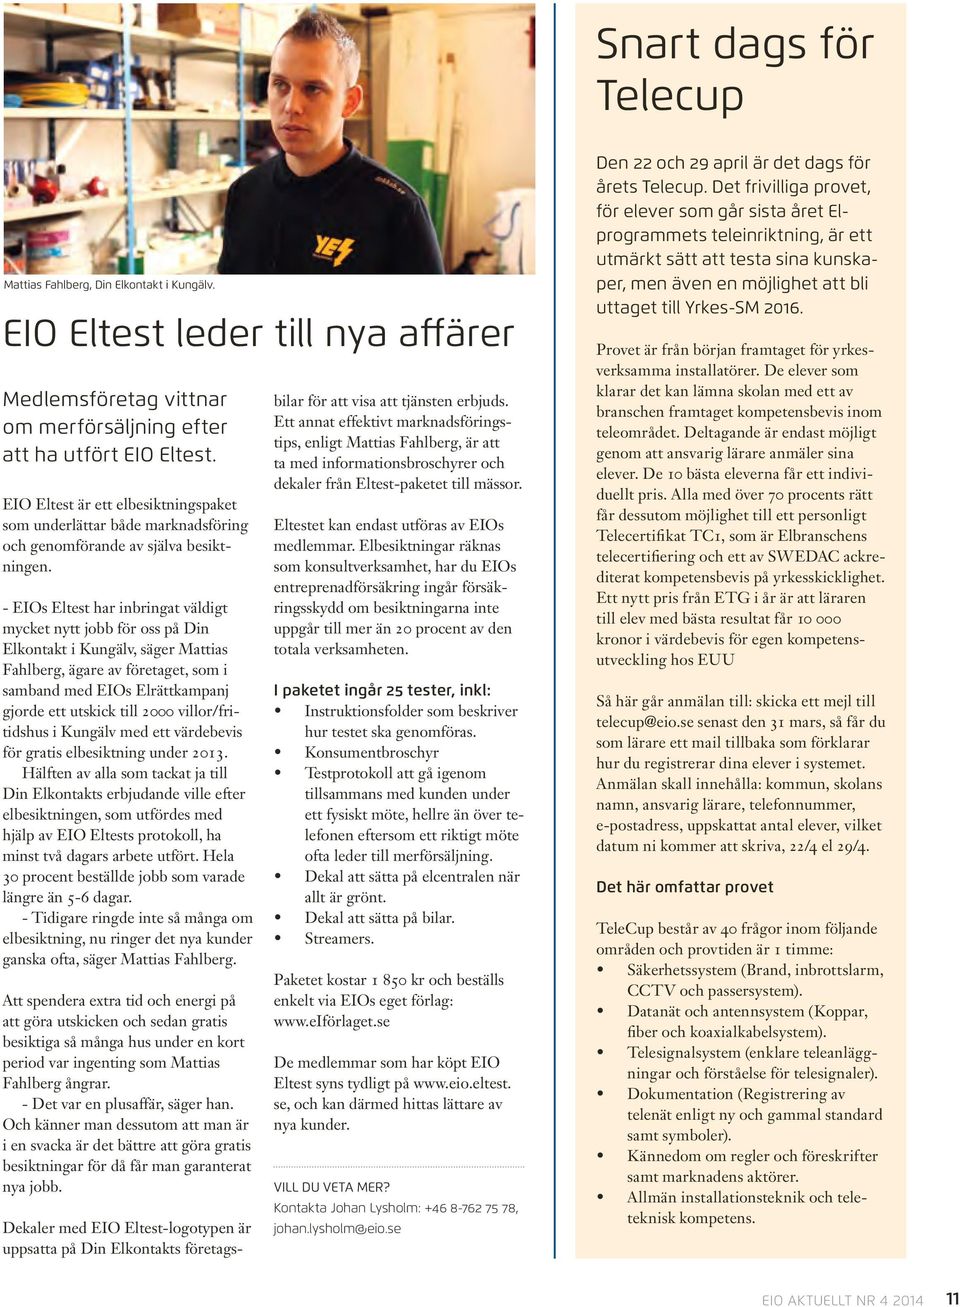 - EIOs Eltest har inbringat väldigt mycket nytt jobb för oss på Din Elkontakt i Kungälv, säger Mattias Fahlberg, ägare av företaget, som i samband med EIOs Elrättkampanj gjorde ett utskick till 2000